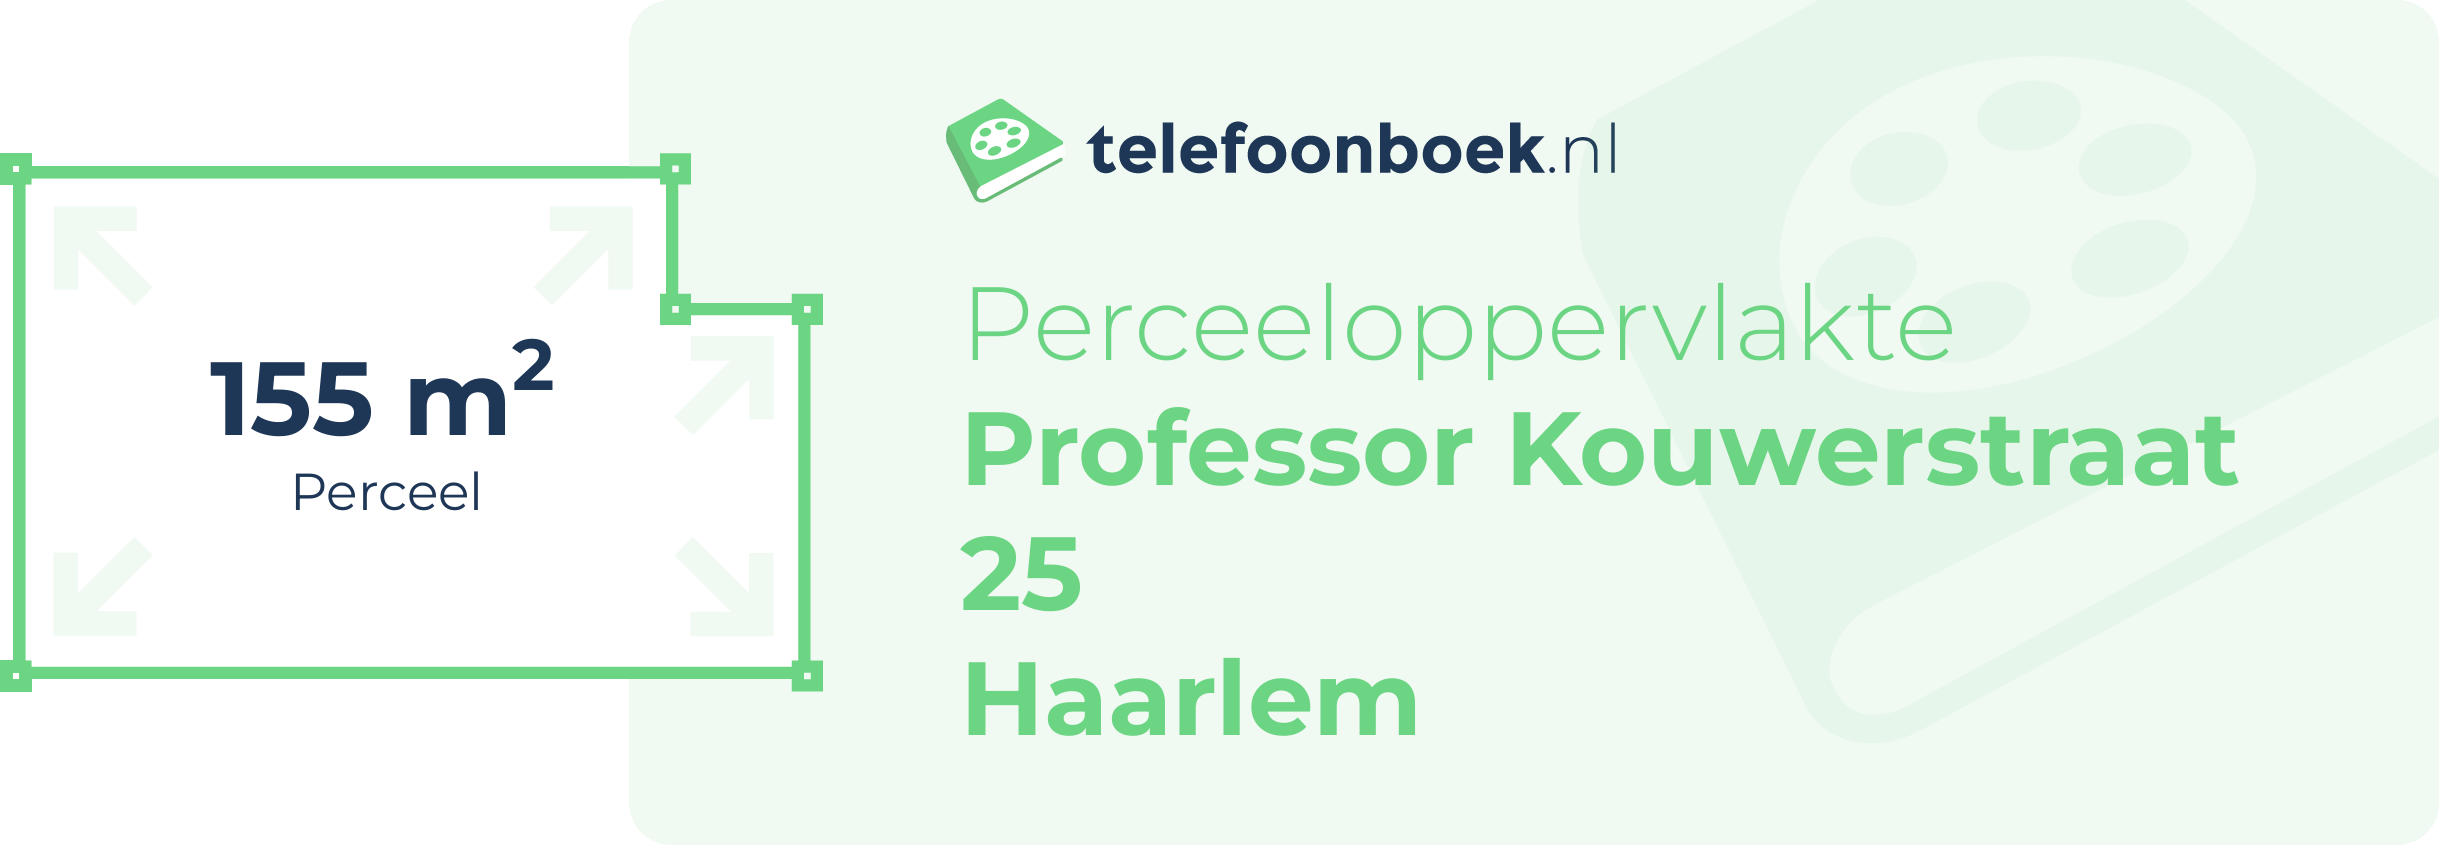 Perceeloppervlakte Professor Kouwerstraat 25 Haarlem